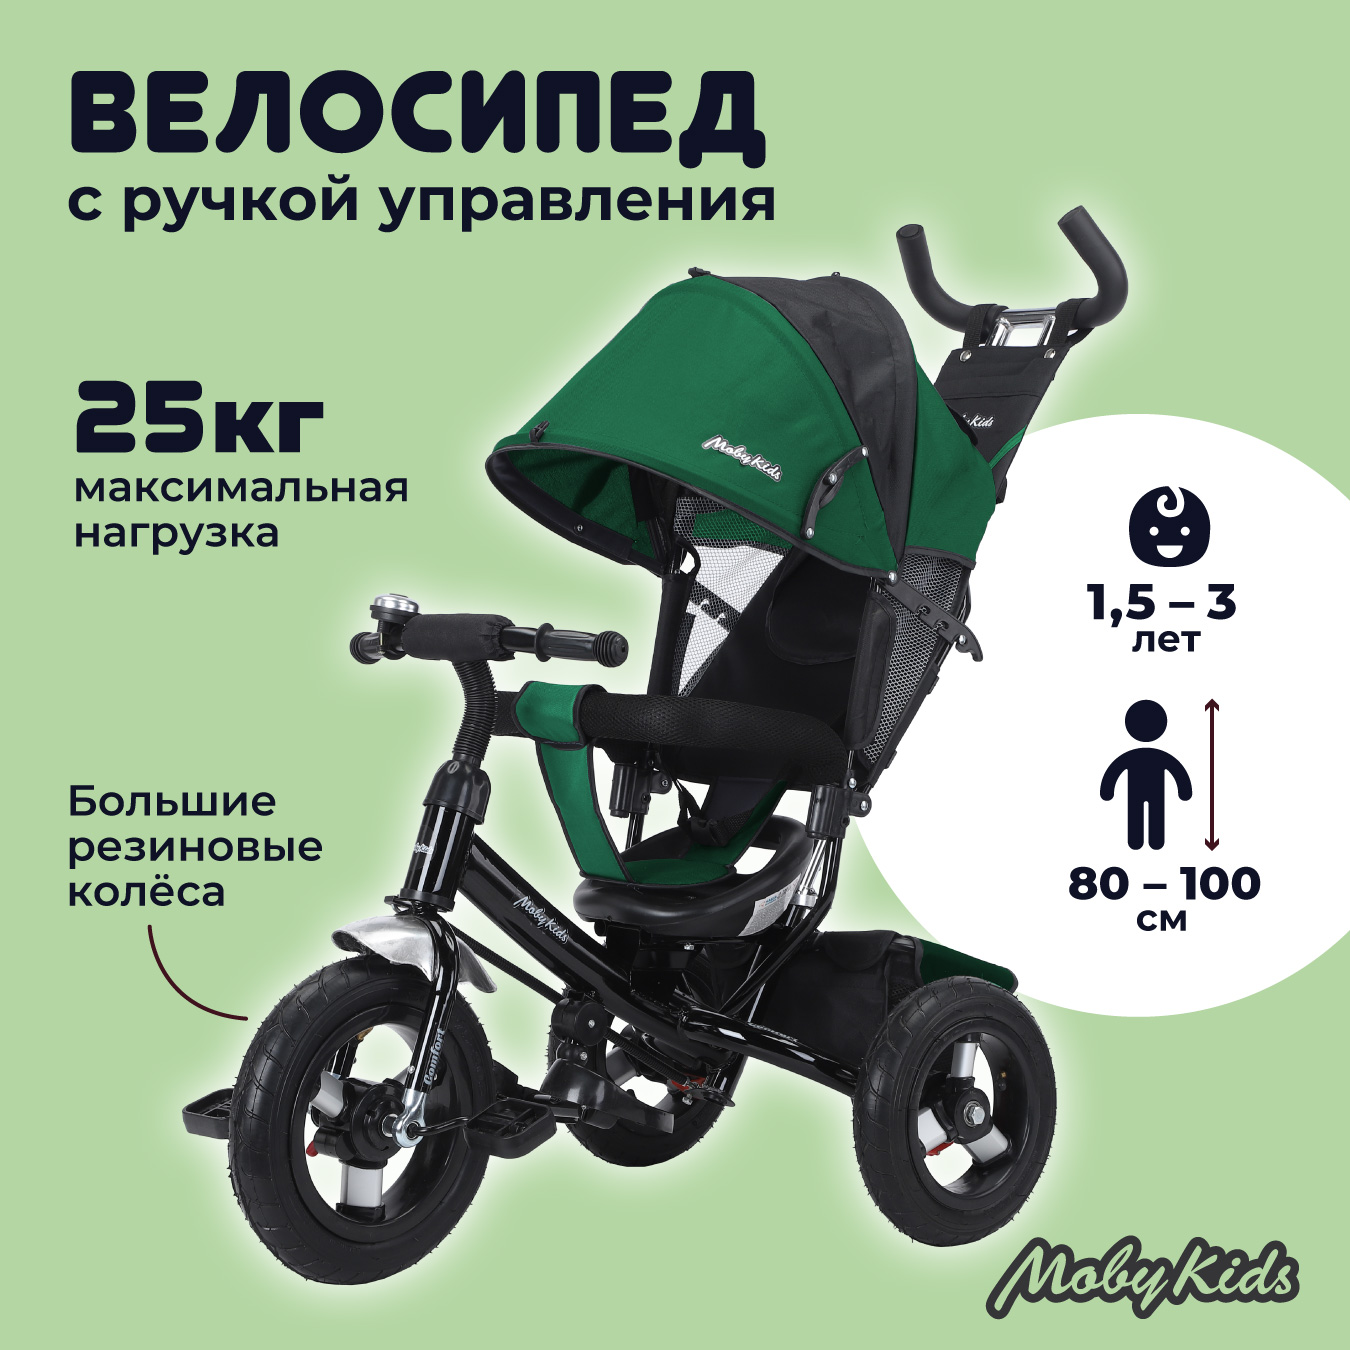 Велосипед трехколесный детский Moby Kids Comfort AIR, зелёный с чёрным велосипед детский трехколесный 3 в 1 moby kids принцесса 9x7 eva 649243 розовый